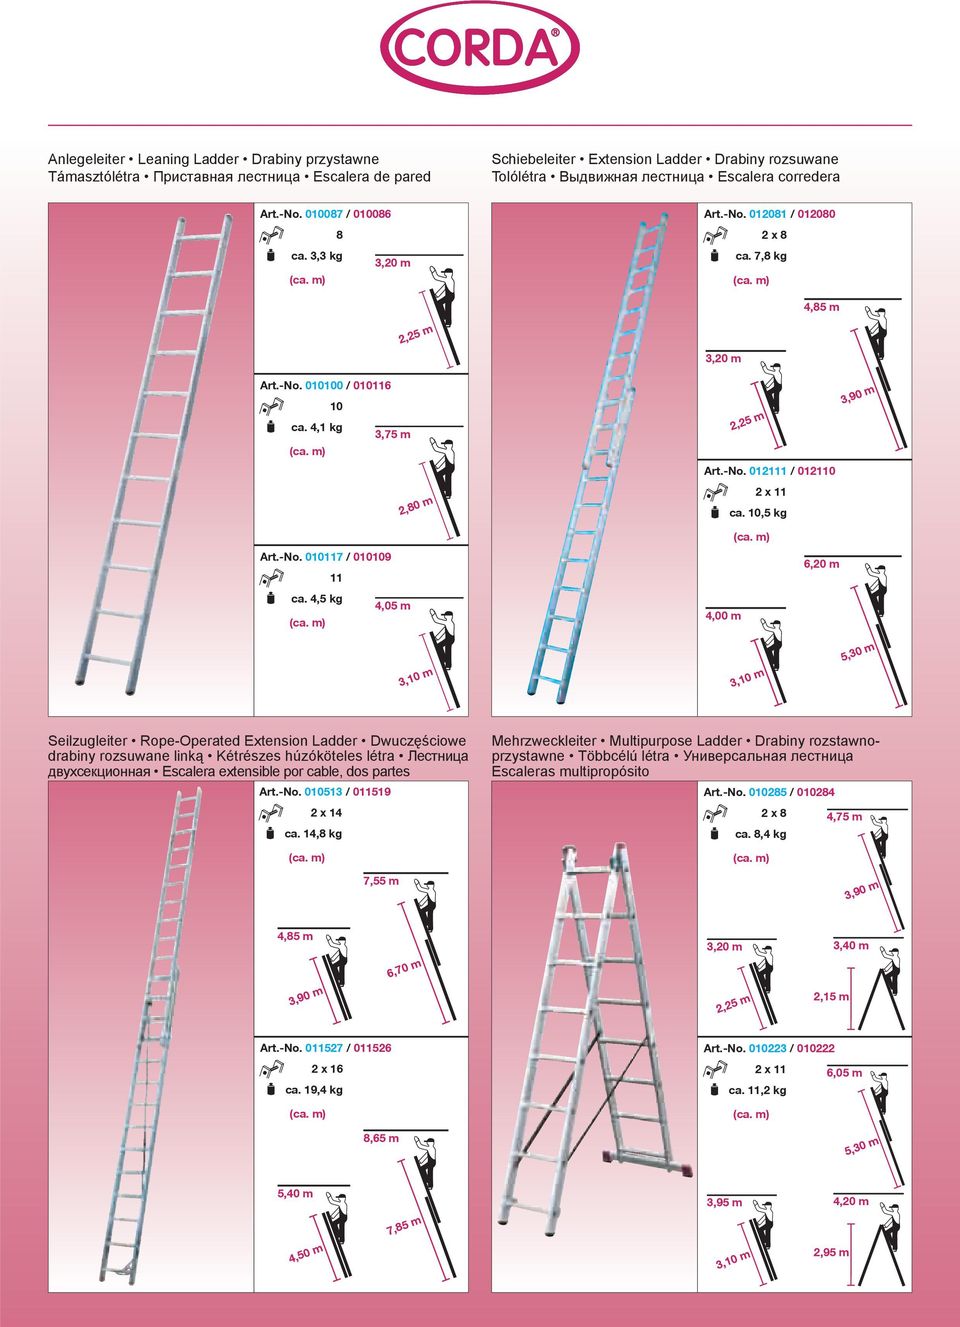 4,5 kg 4,05 m 6,20 m 5,30 m Seilzugleiter Rope-Operated Extension Ladder Dwuczęściowe drabiny rozsuwane linką Kétrészes húzóköteles létra Лестница двухсекционная Escalera extensible por cable, dos